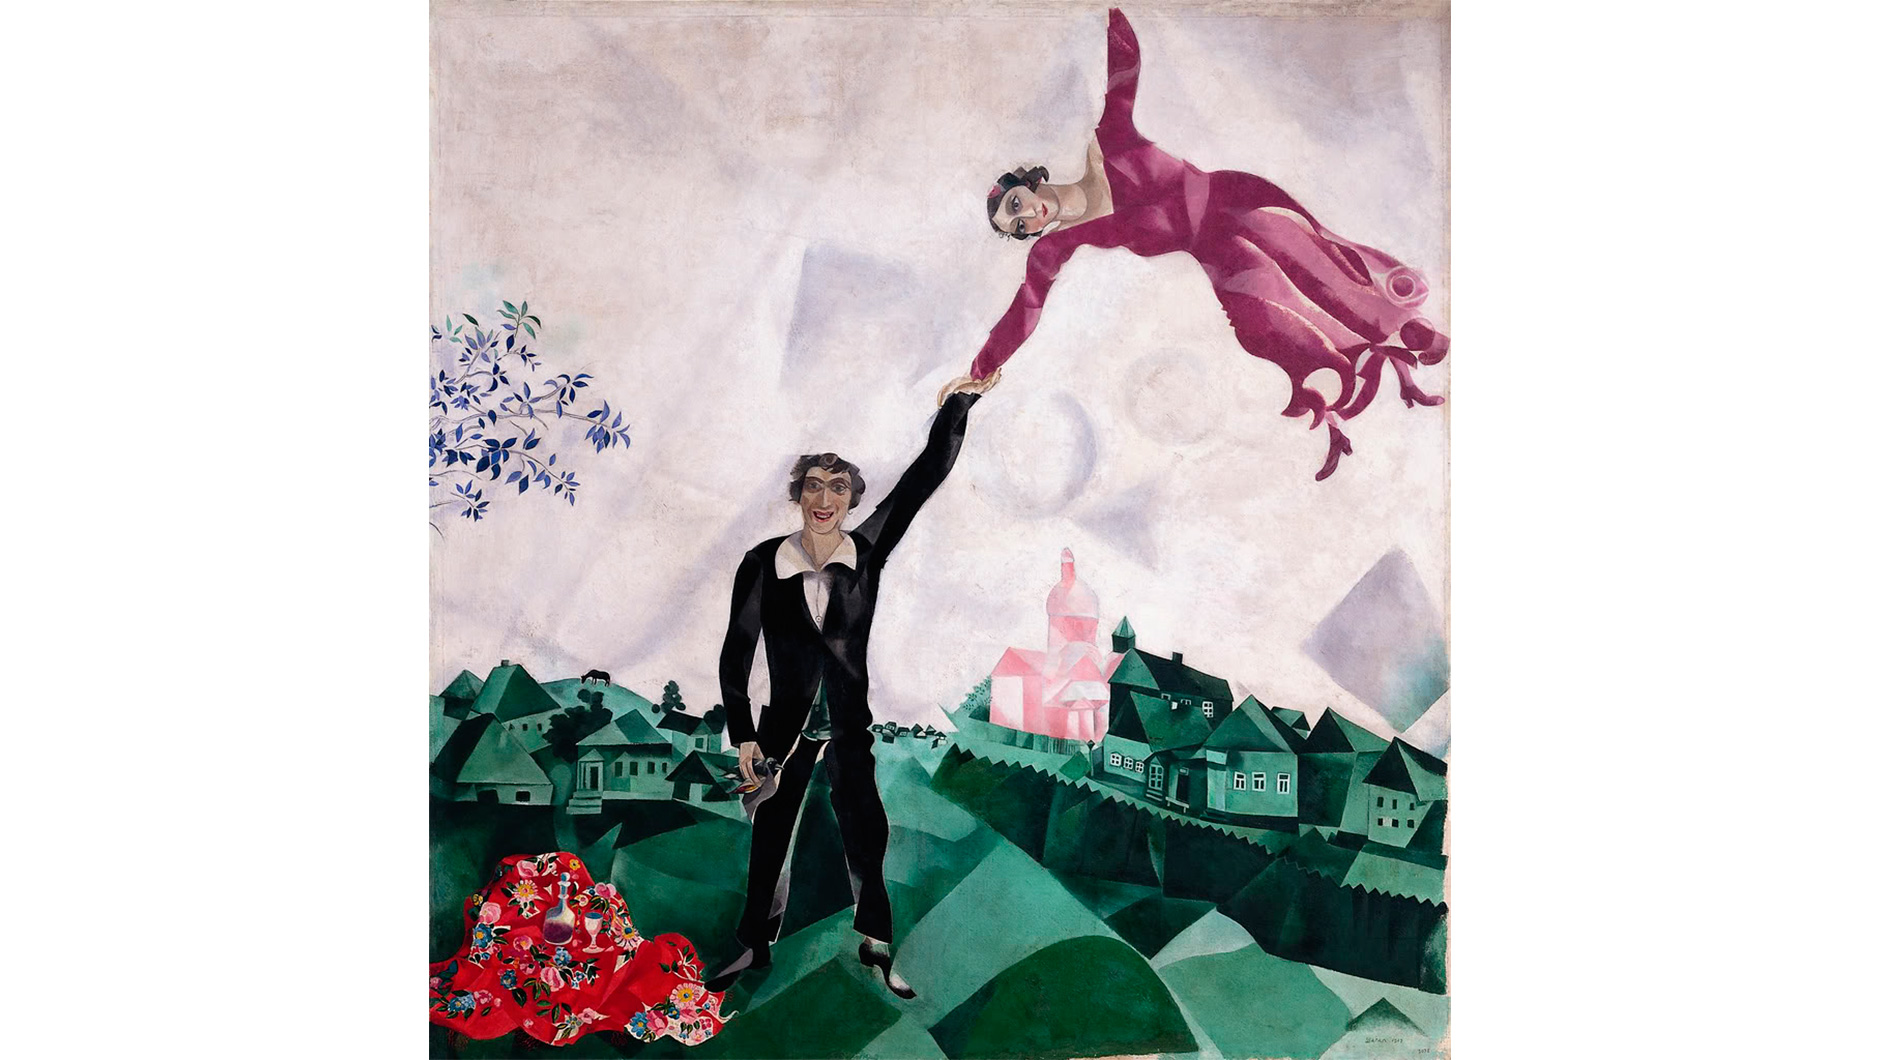 Марк Шагал. “Прогулка” (1918)